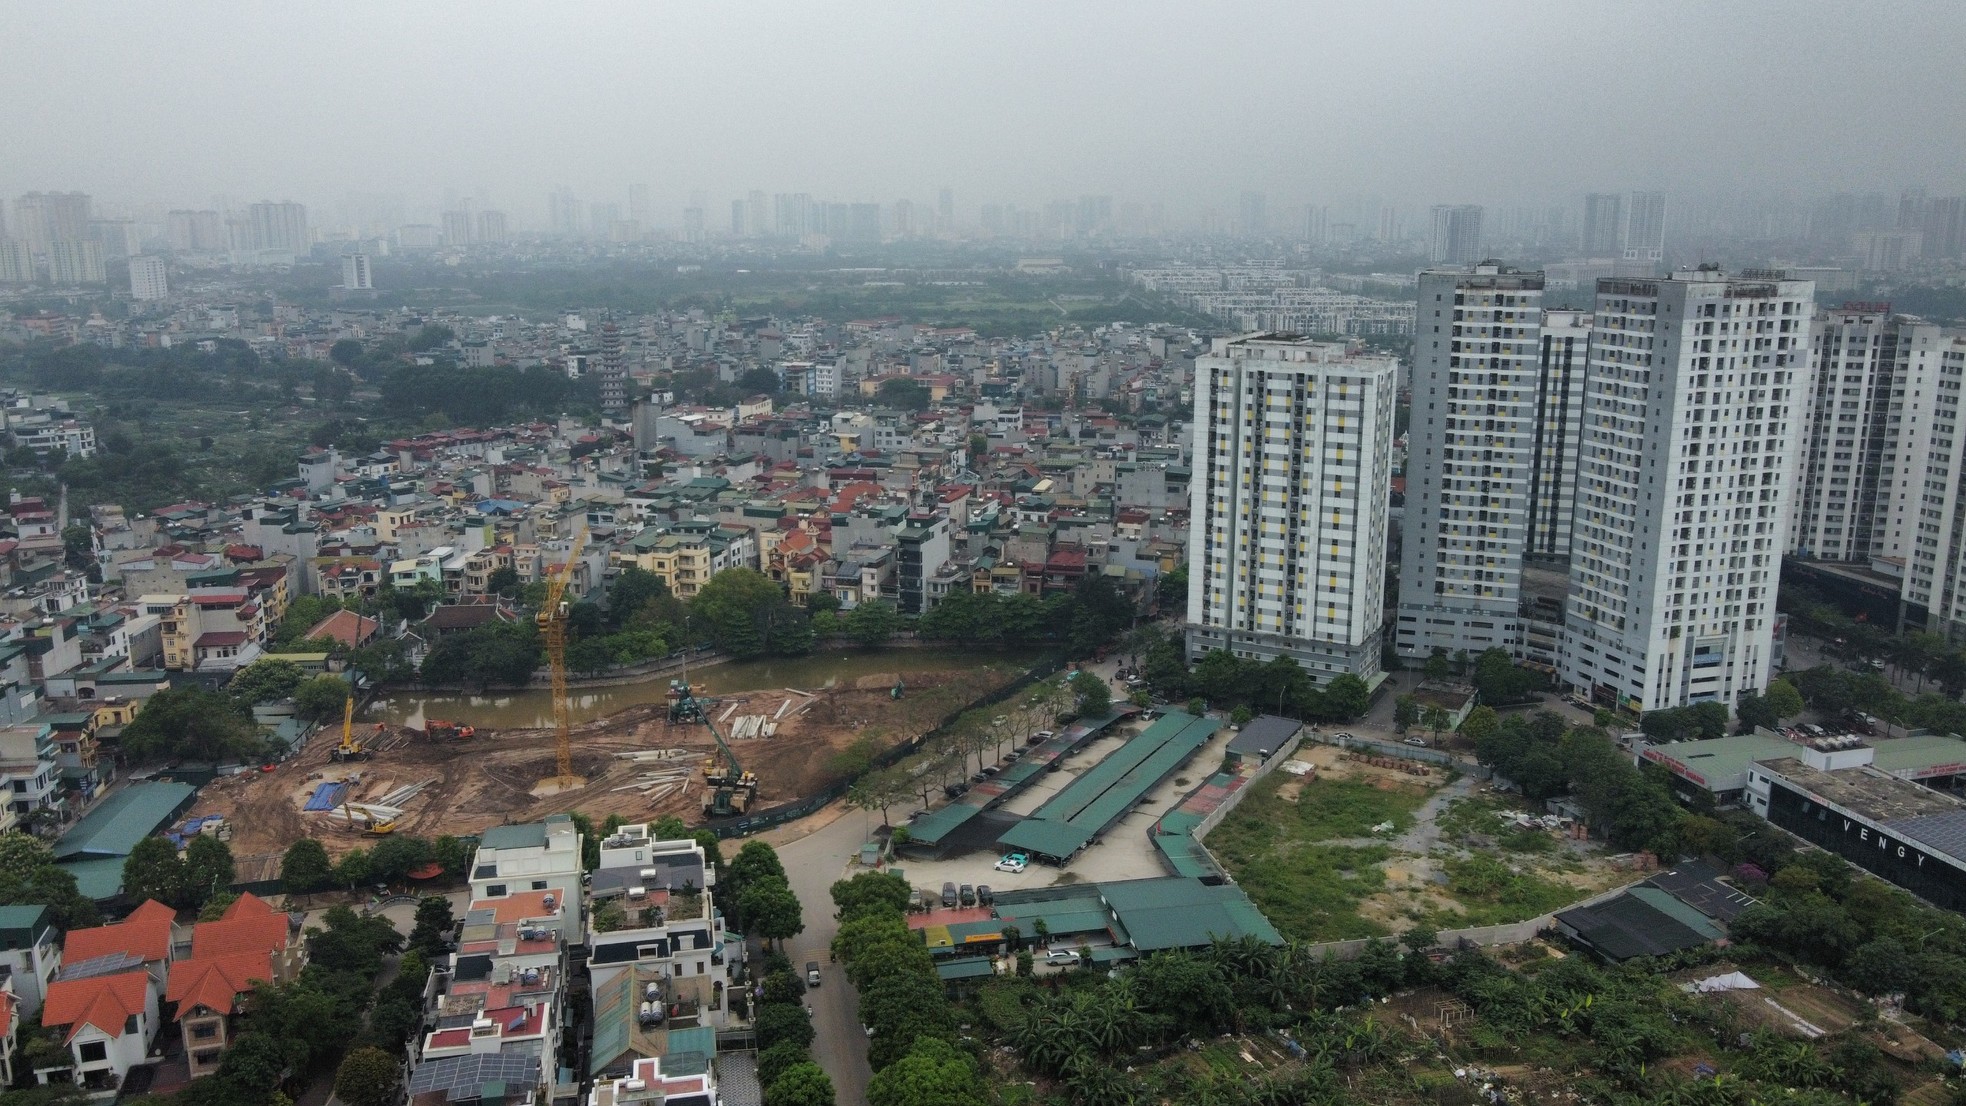 Khu đất 'mọc' bãi xe lậu nơi phường đông dân nhất Hà Nội chuẩn bị xây trường học - Ảnh 6.